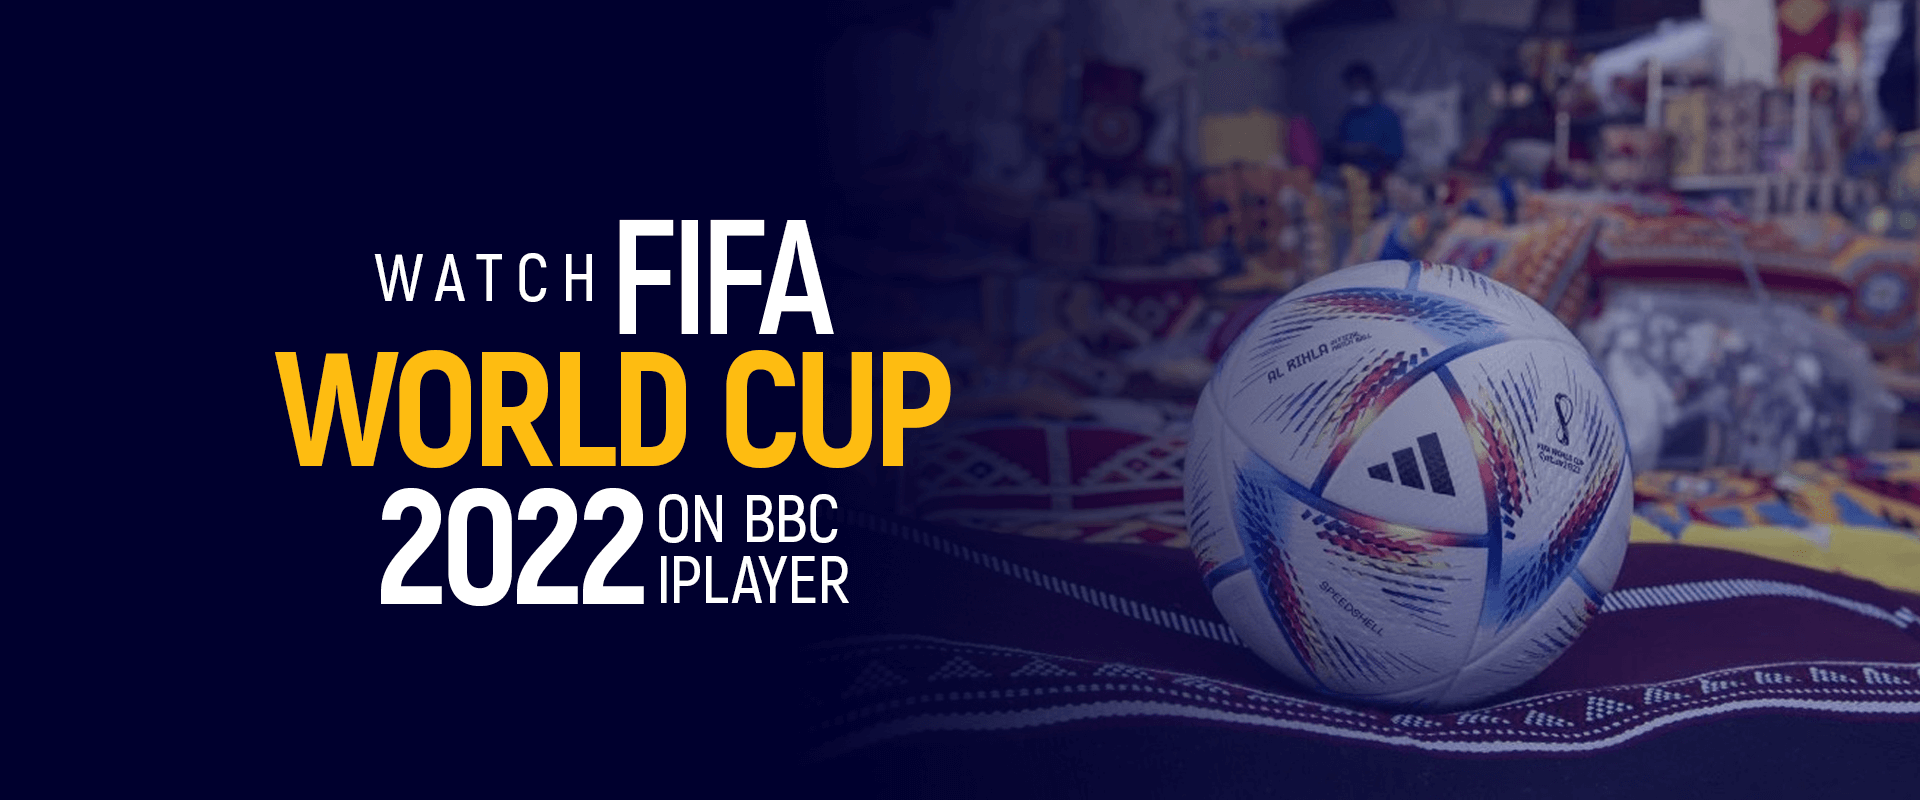 bbc fifa world cup live stream